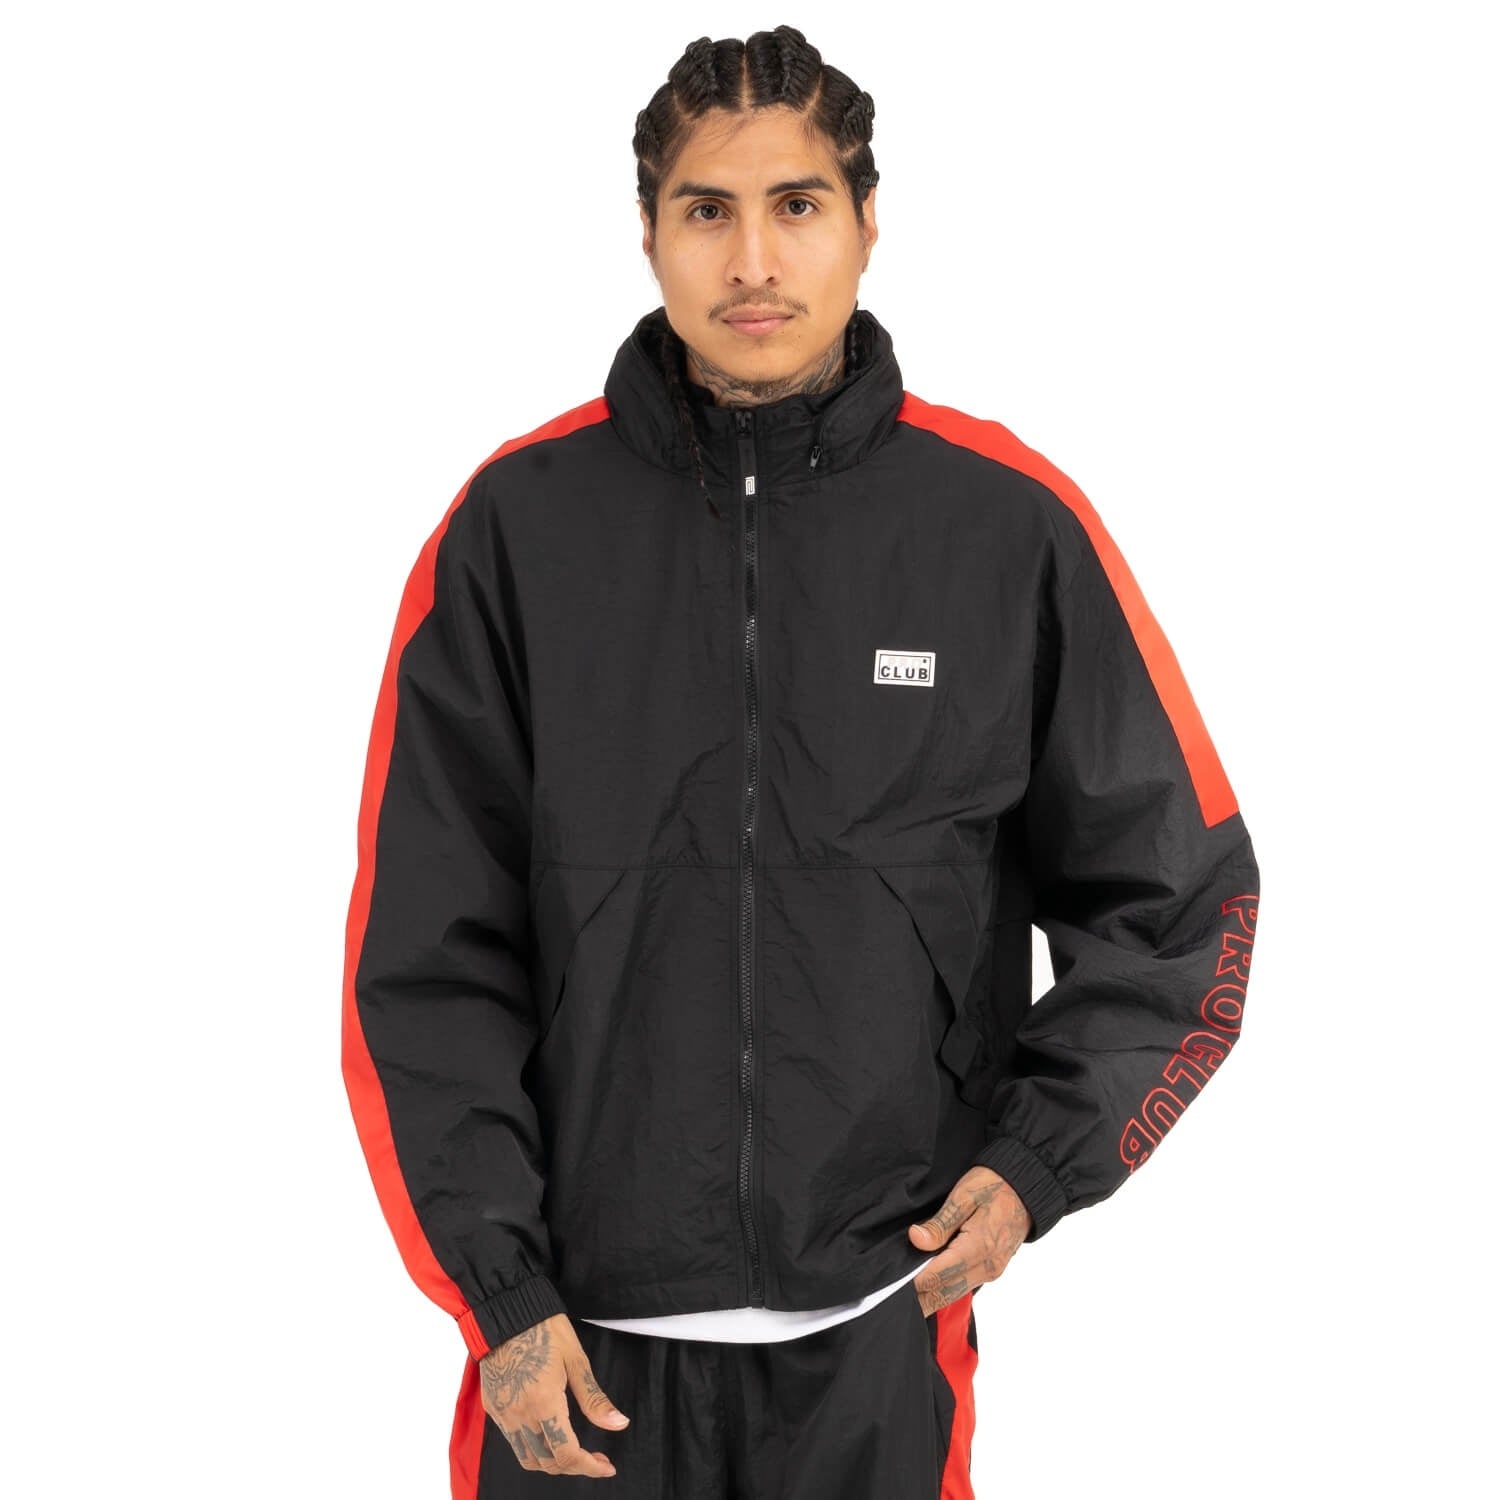 Pro Club Men's Fleece Lined Windbreaker Jacket, Black, Small